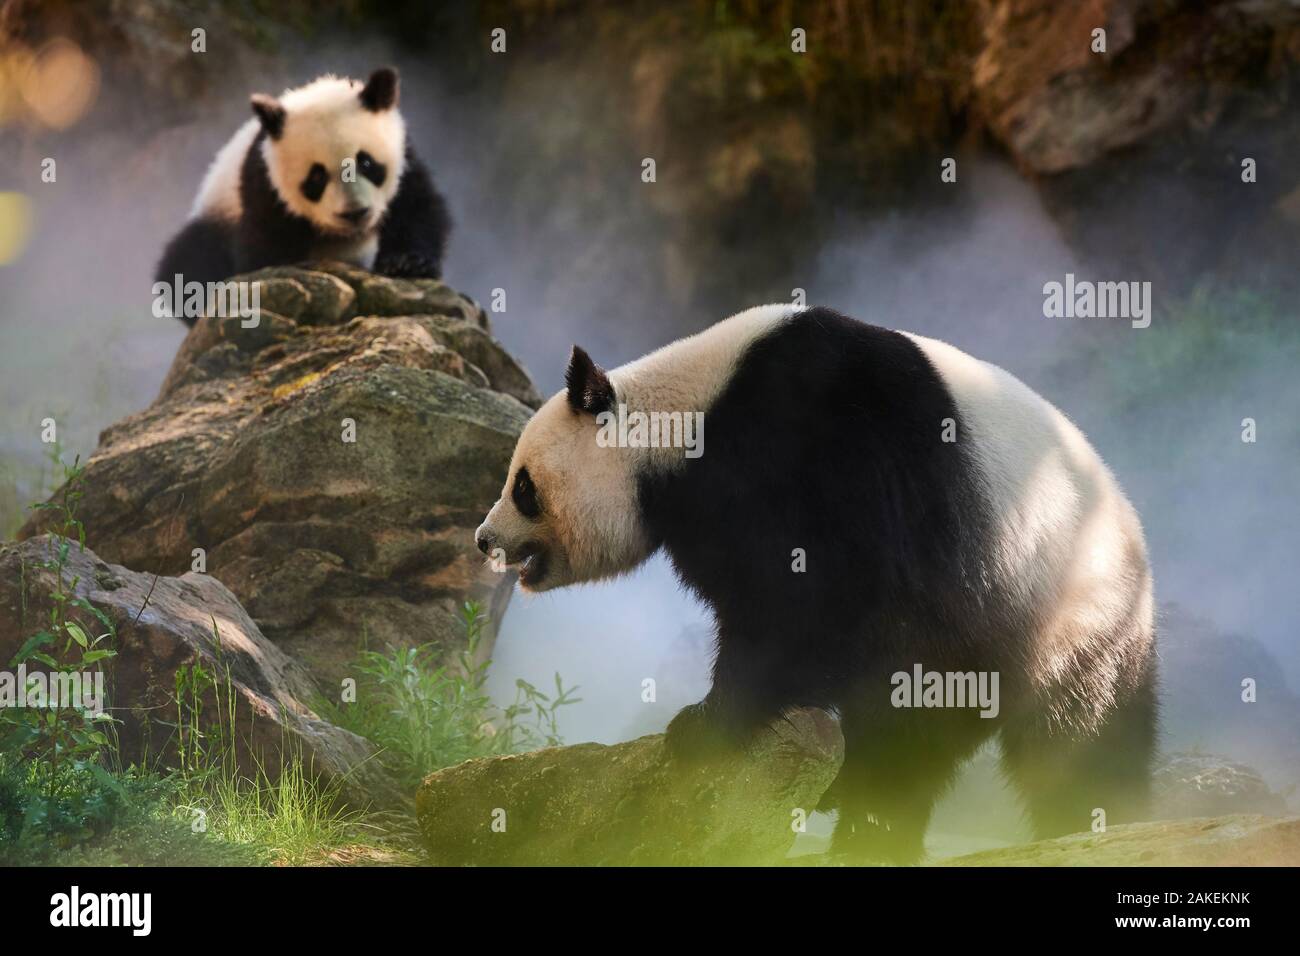 Panda géant (Ailuropoda melanoleuca) femelle Huan Huan et son petit dans leur enceinte dans le brouillard.Yuan Meng, premier grand panda jamais né en France, l'âge de 10 mois, captifs à zoo de Beauval, Saint Aignan sur Cher, France La brume est créé artificiellement par machine, afin de créer un environnement plus frais, plus proche de la situation dans leur milieu naturel l'habitat de montagne en Chine Banque D'Images